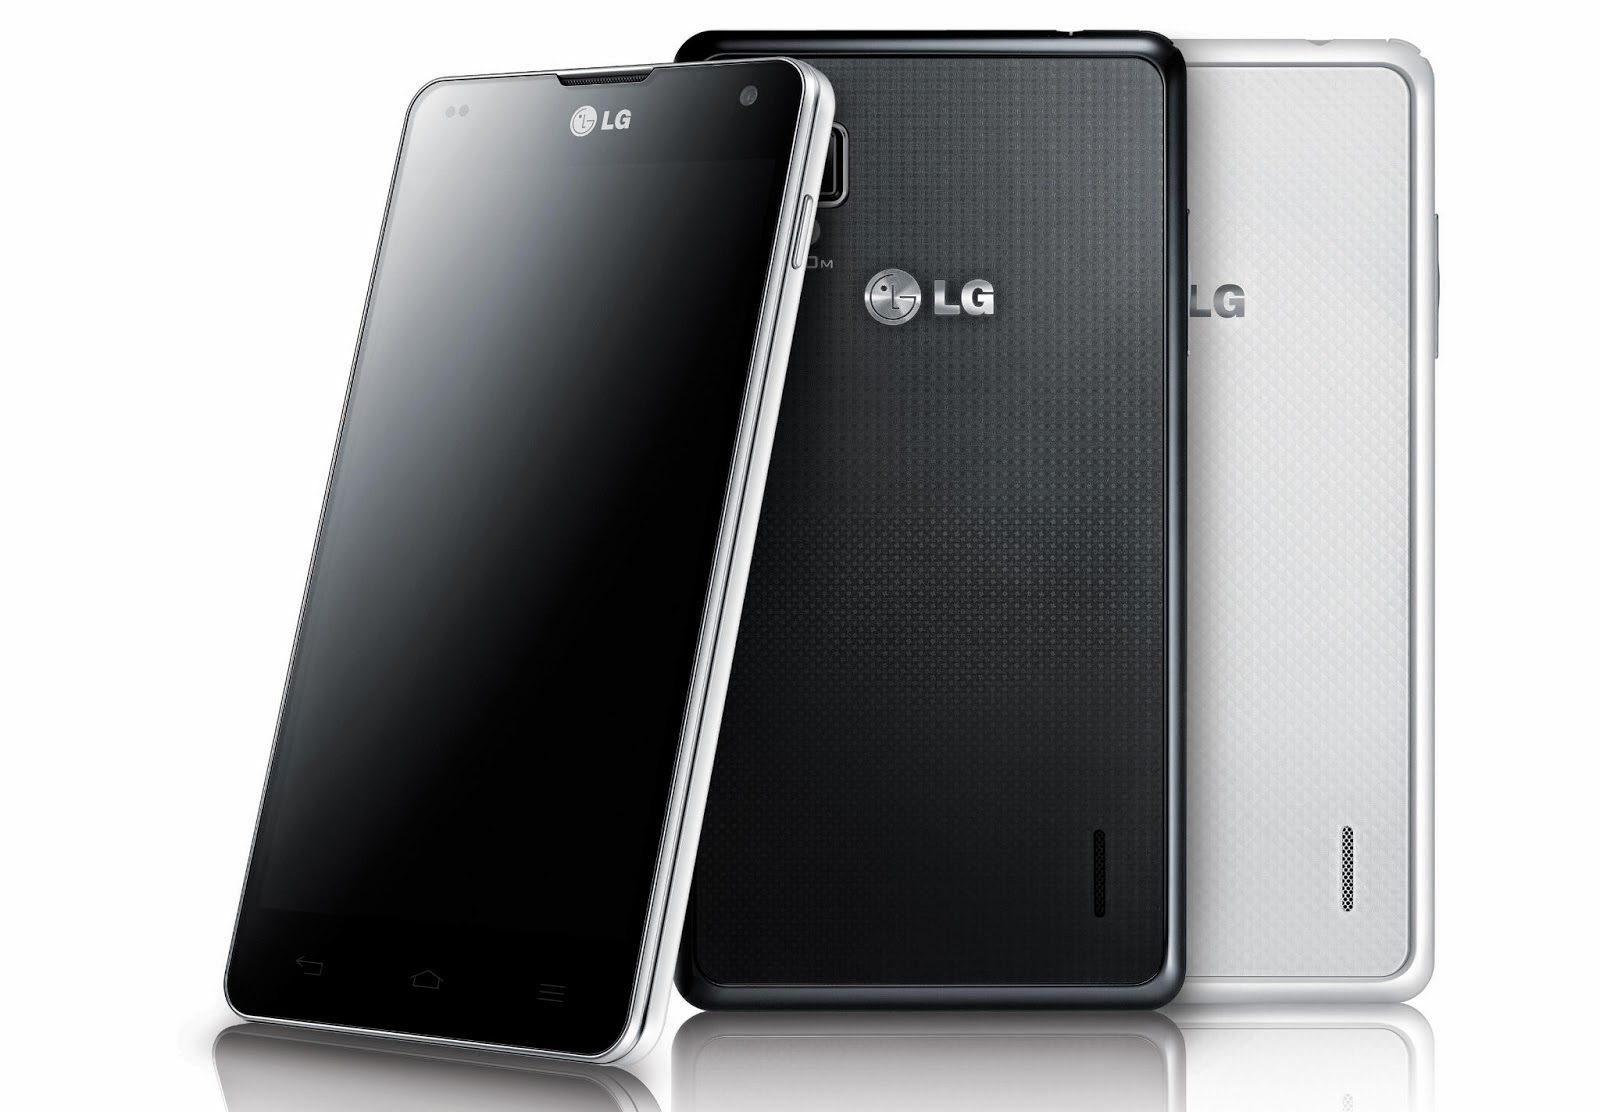 Daftar Harga HP LG Terbaru November 2014 Majalah Smartphone